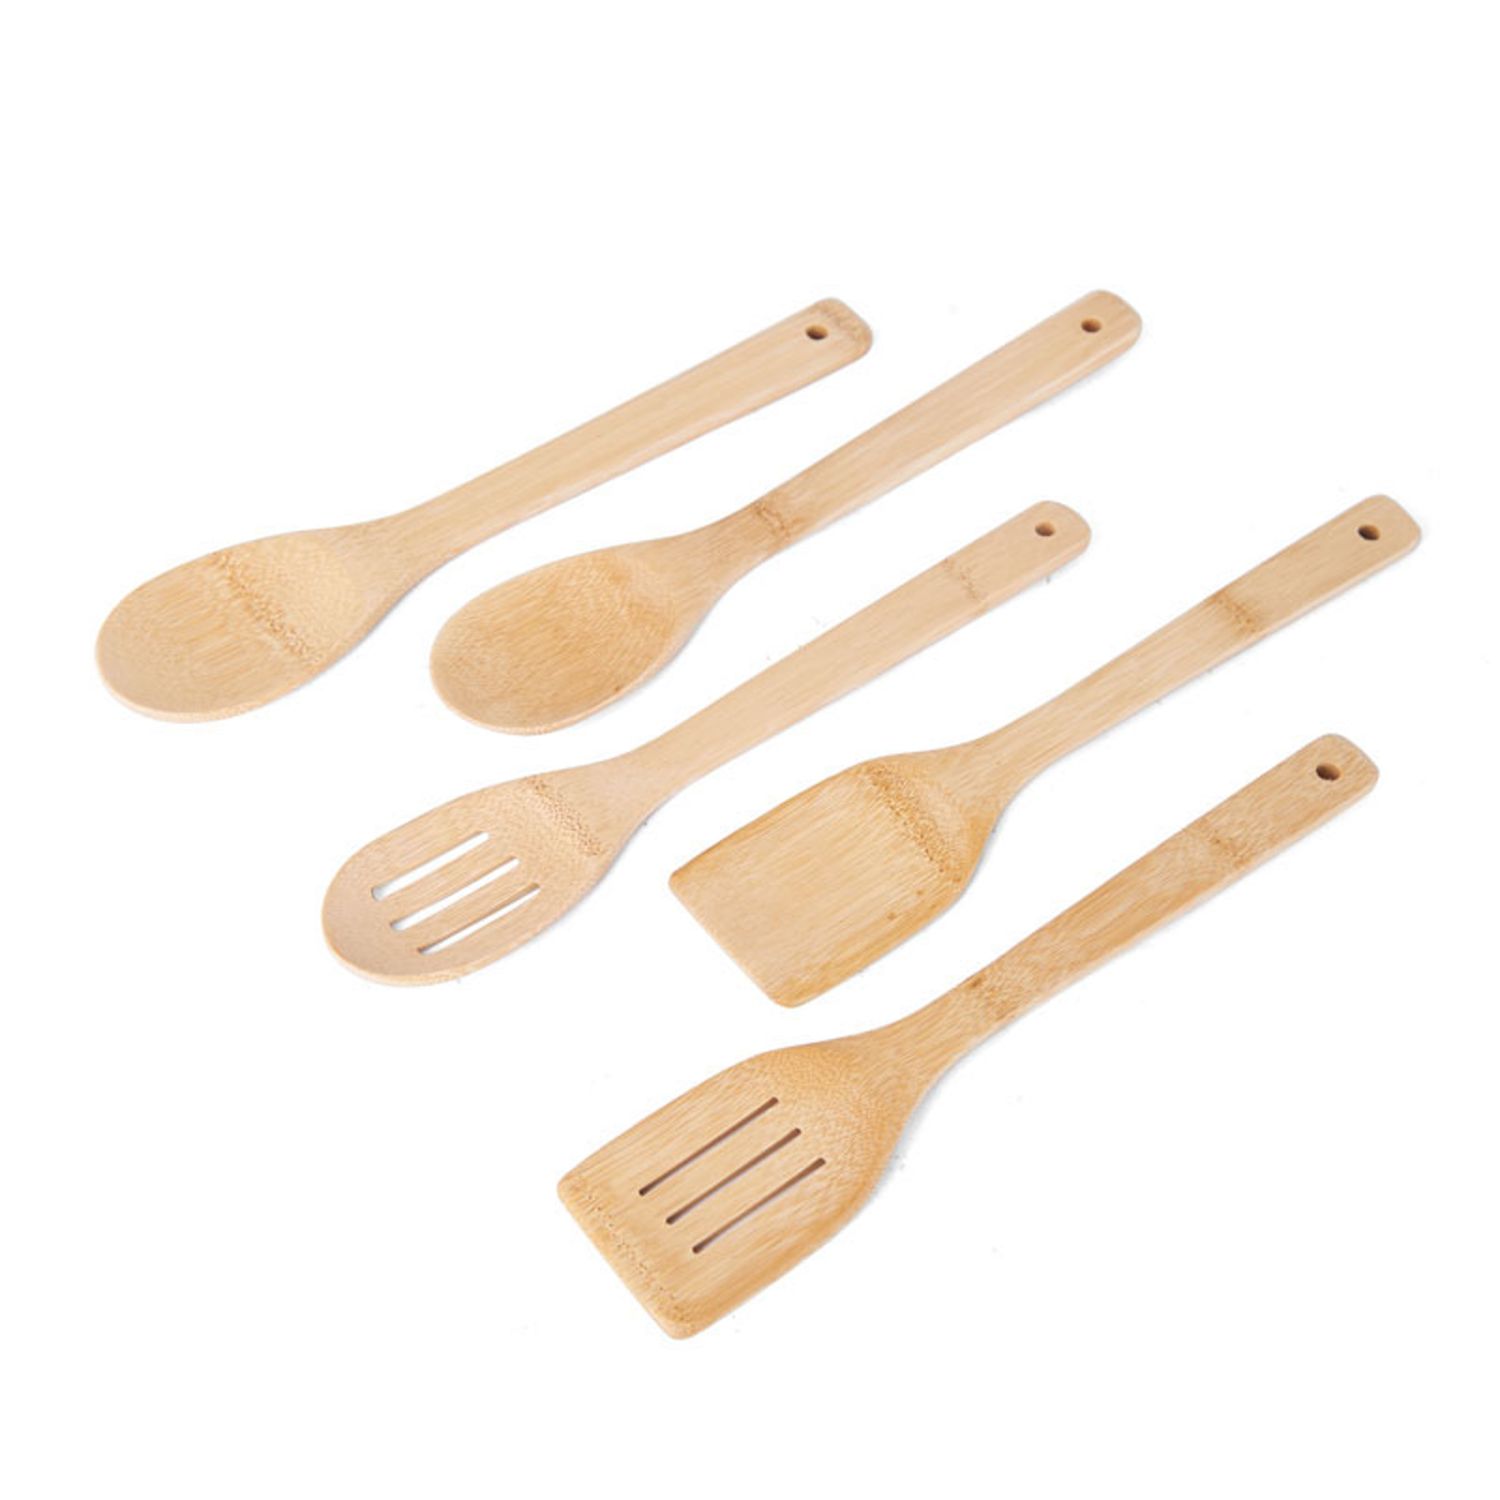 Island Bamboo Pakka Wood 6-Piece Kitchen Utensil Set w/ Measuring Spoons  Cooking